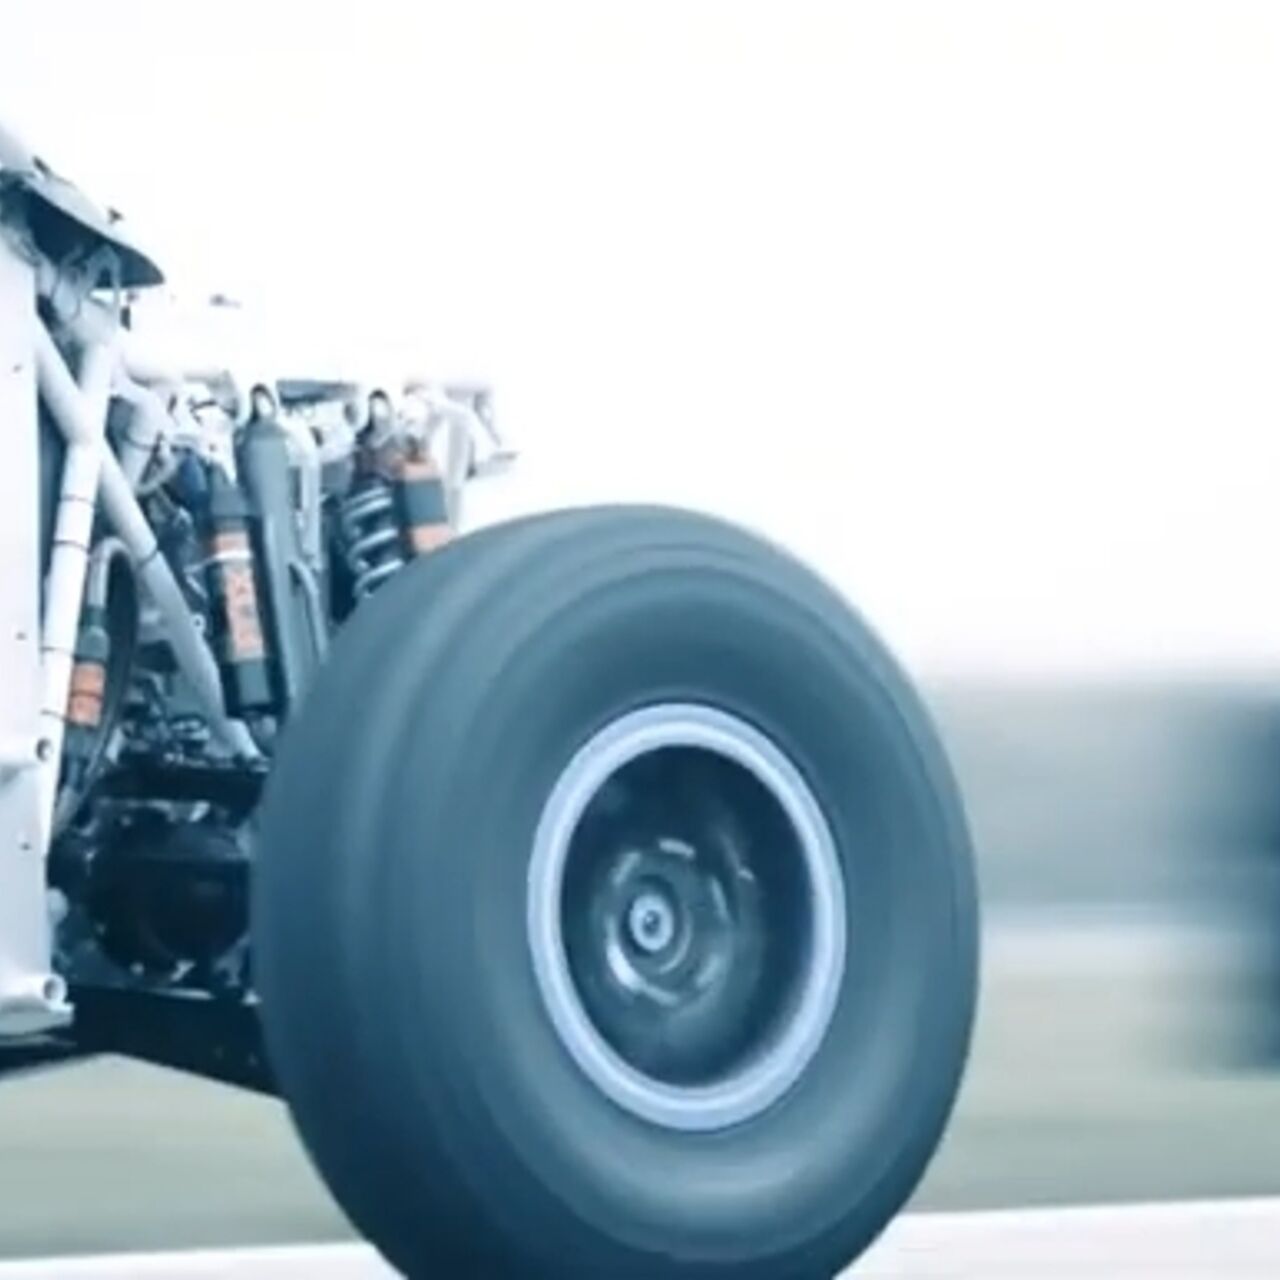 Extreme H: kerangka penggeledahan mobil Off-Road yang ditenagai oleh sel bahan bakar hidrogen